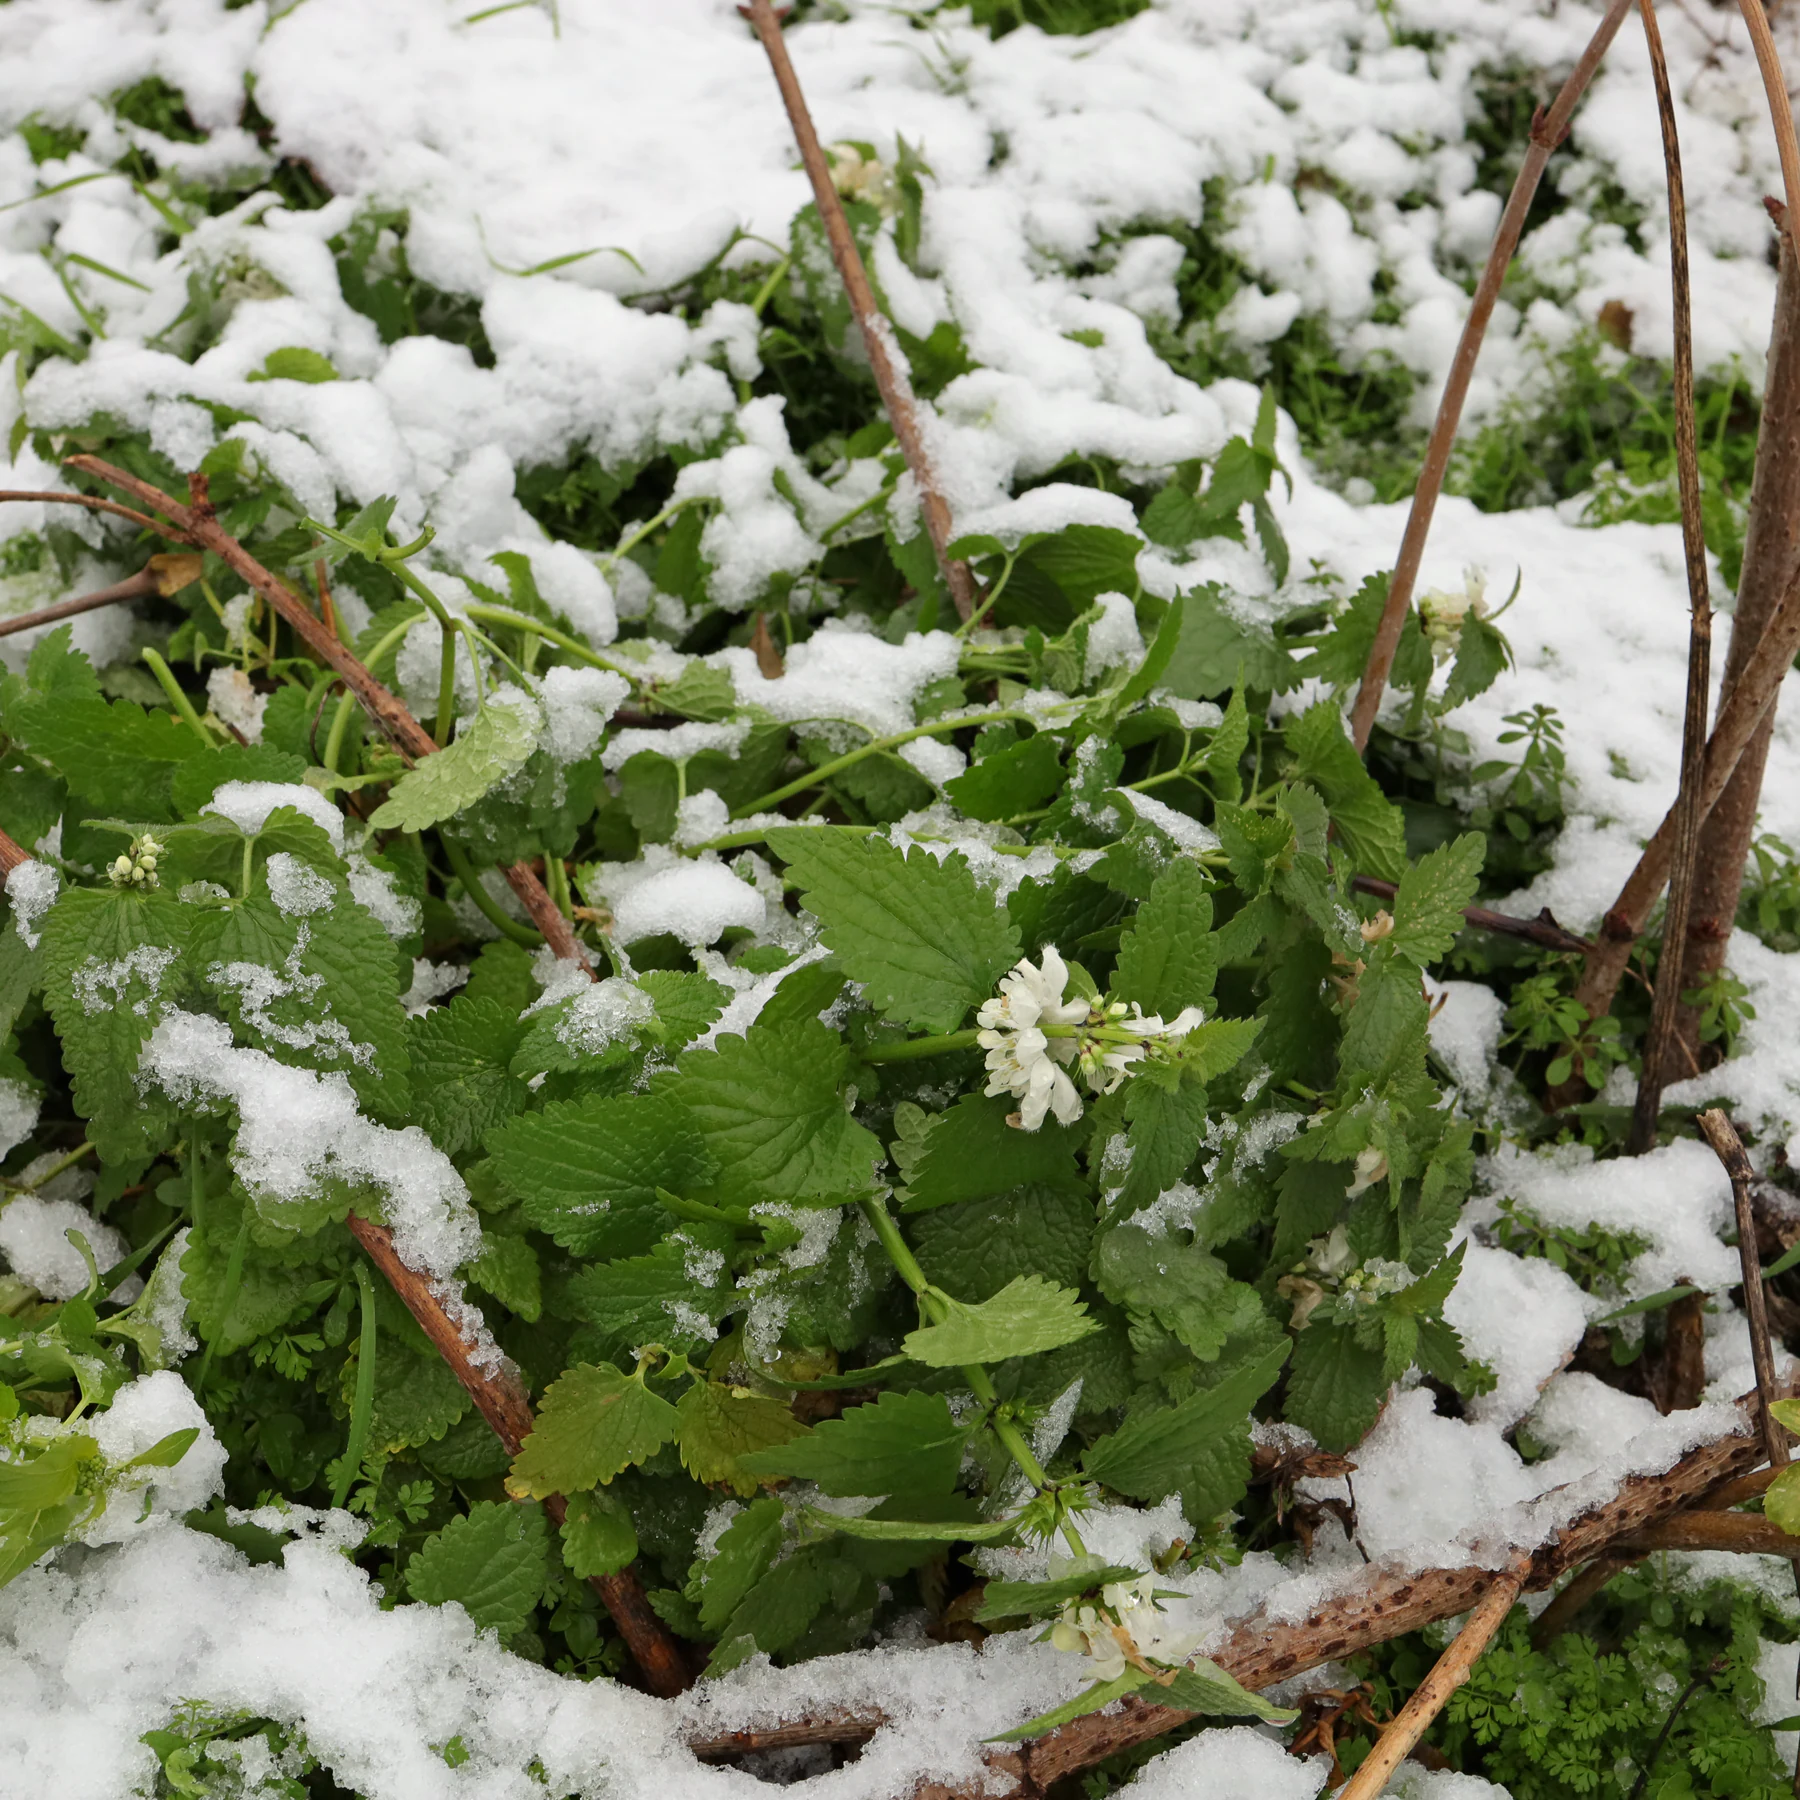 Lamium album in the snow